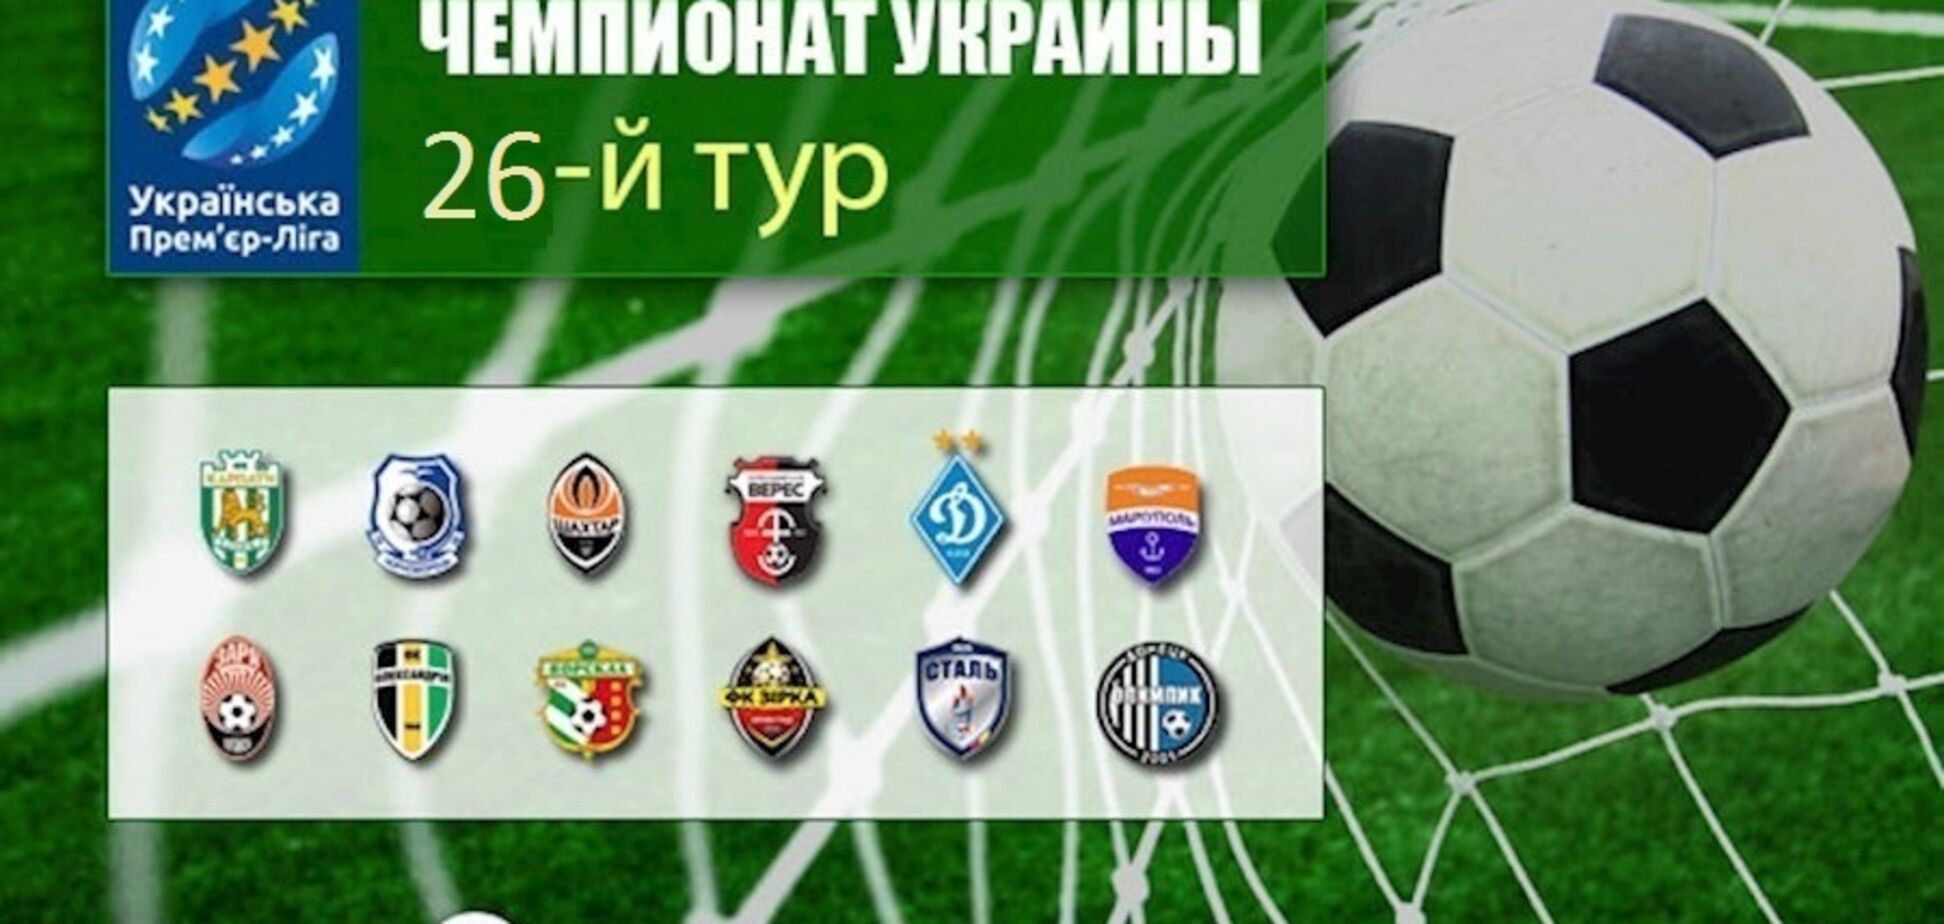 26-й тур чемпіонату України з футболу: результати і відео обзори матчів